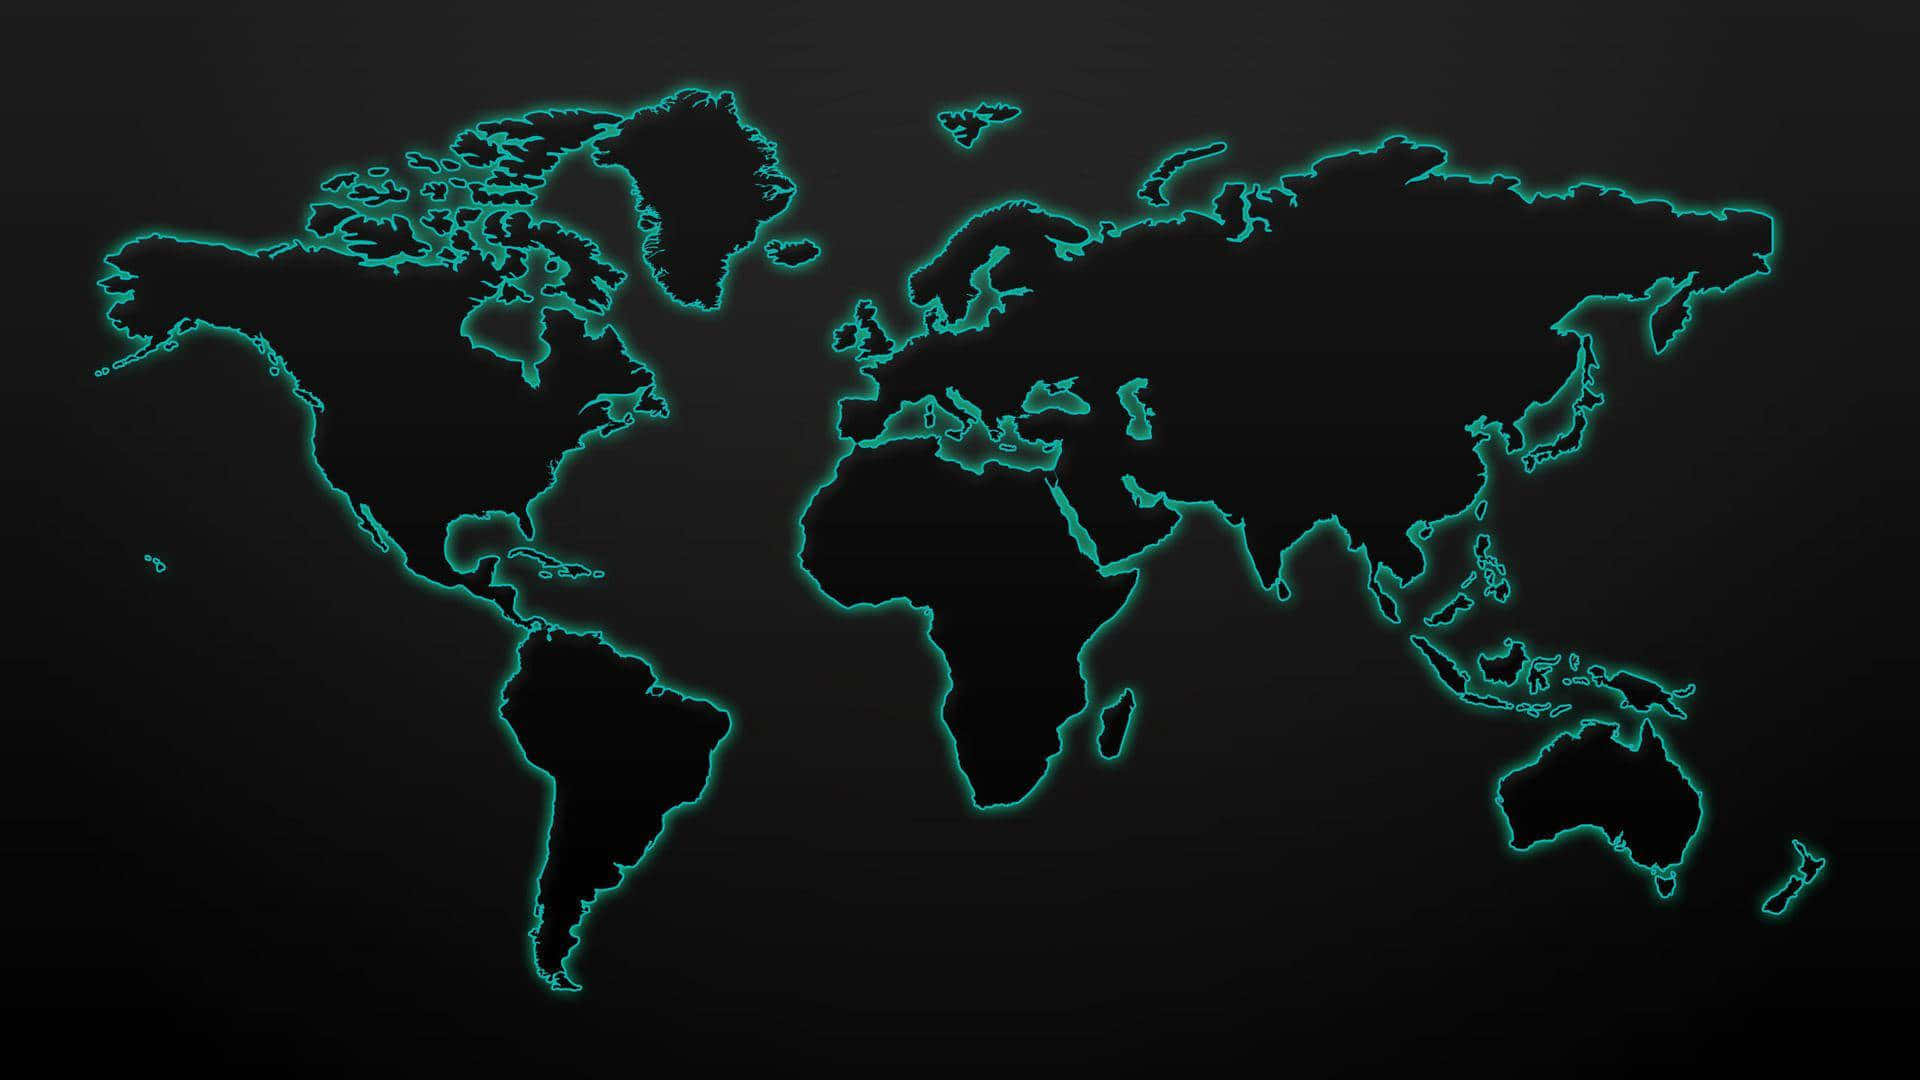 Papelde Parede Com Mapa Mundial.